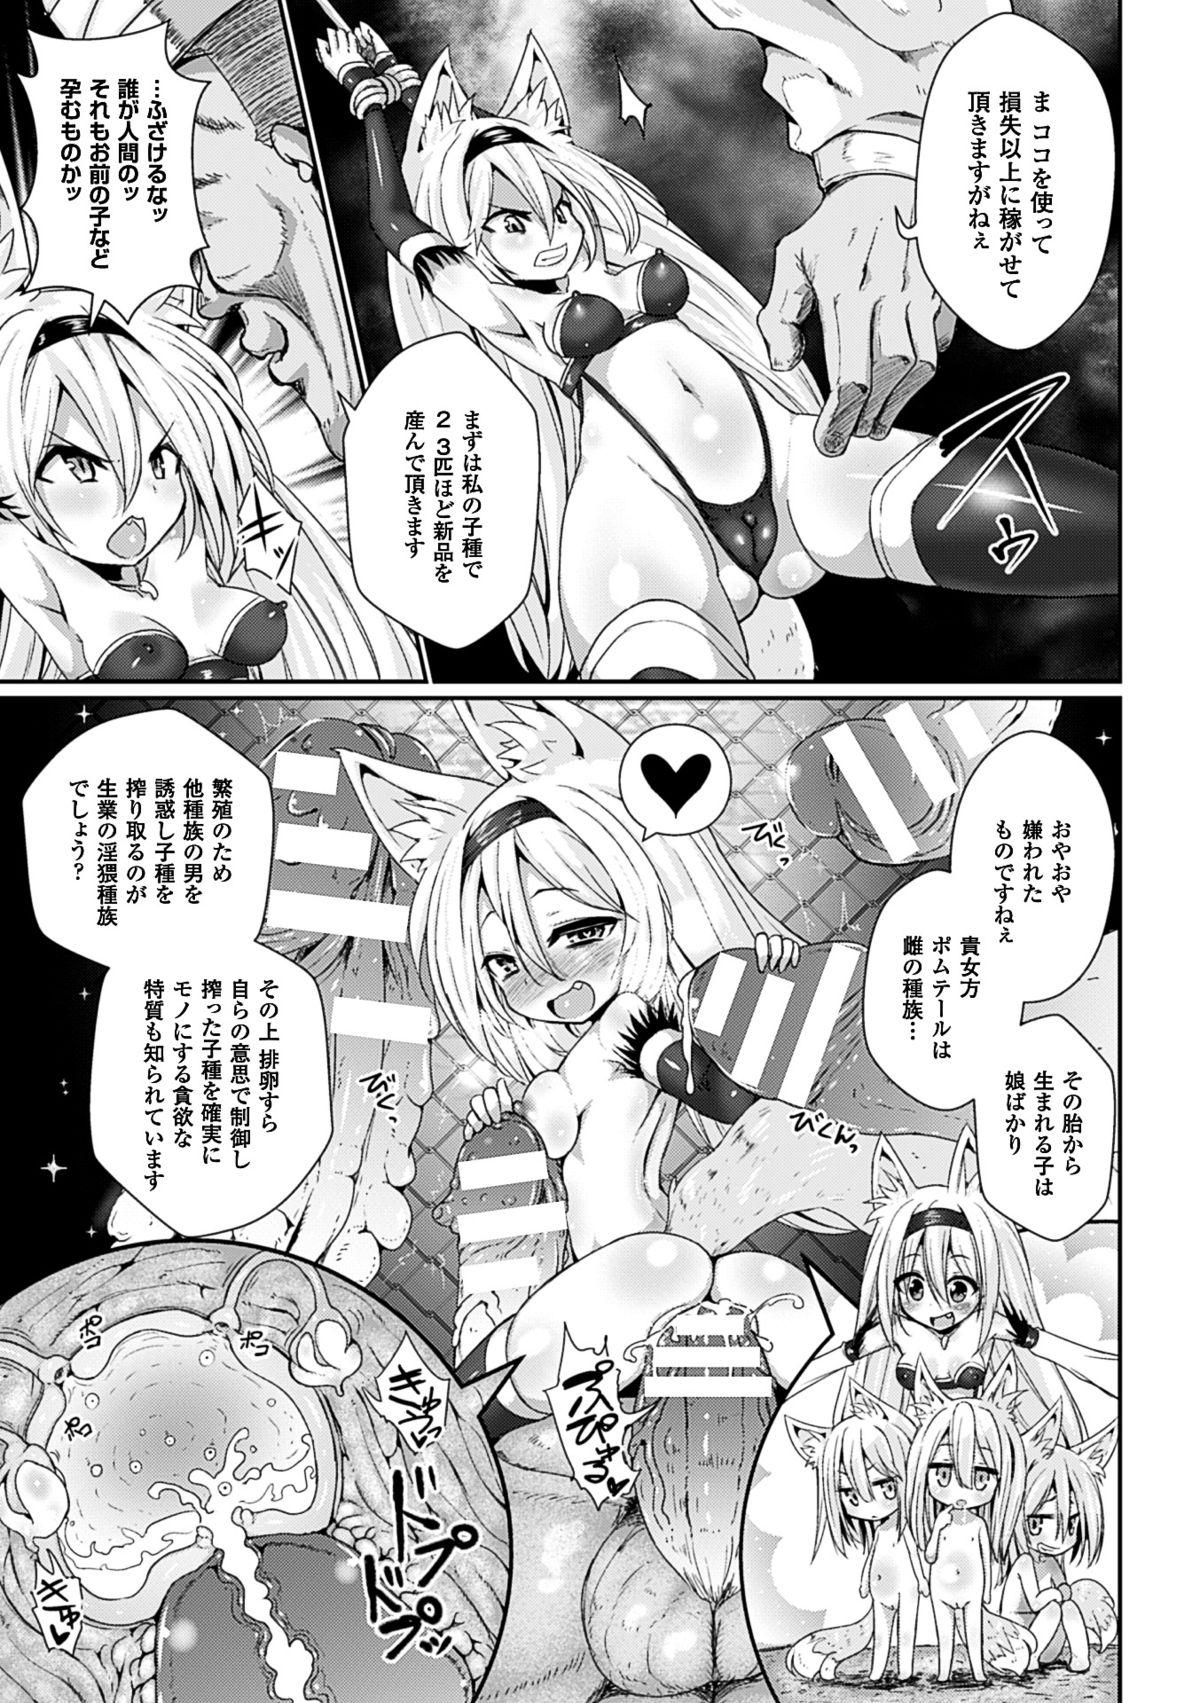 Letsdoeit 2D Comic Magazine Aku no Idenshi de Nakadashi Haramase! Vol. 1 Caliente - Page 6